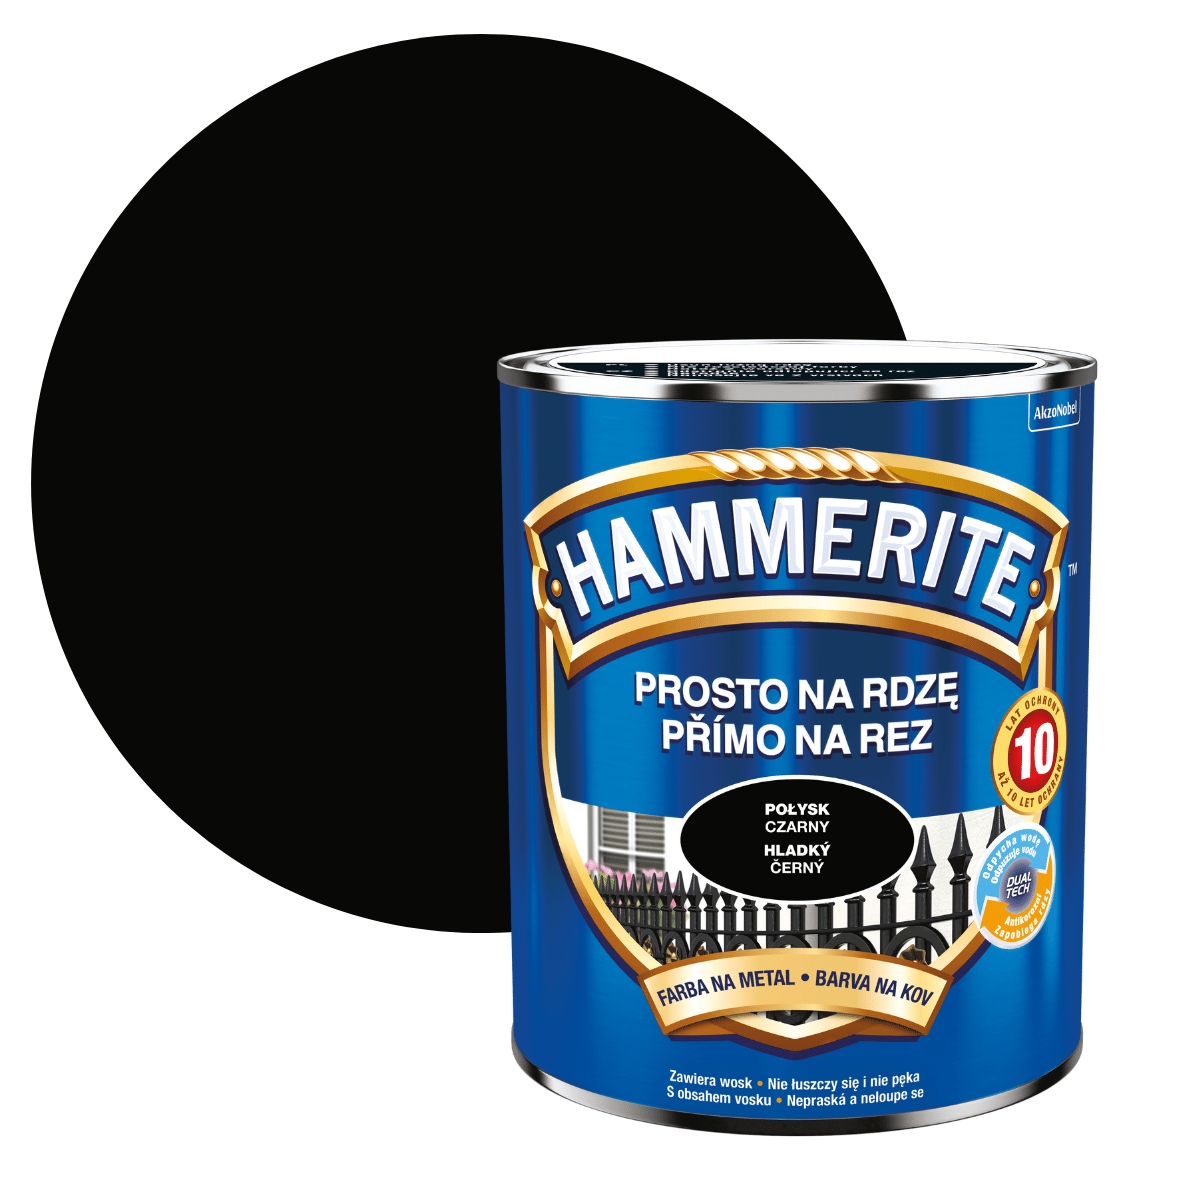 Hammerite rust beater no1 антикоррозийный грунт для черных металлов фото 59